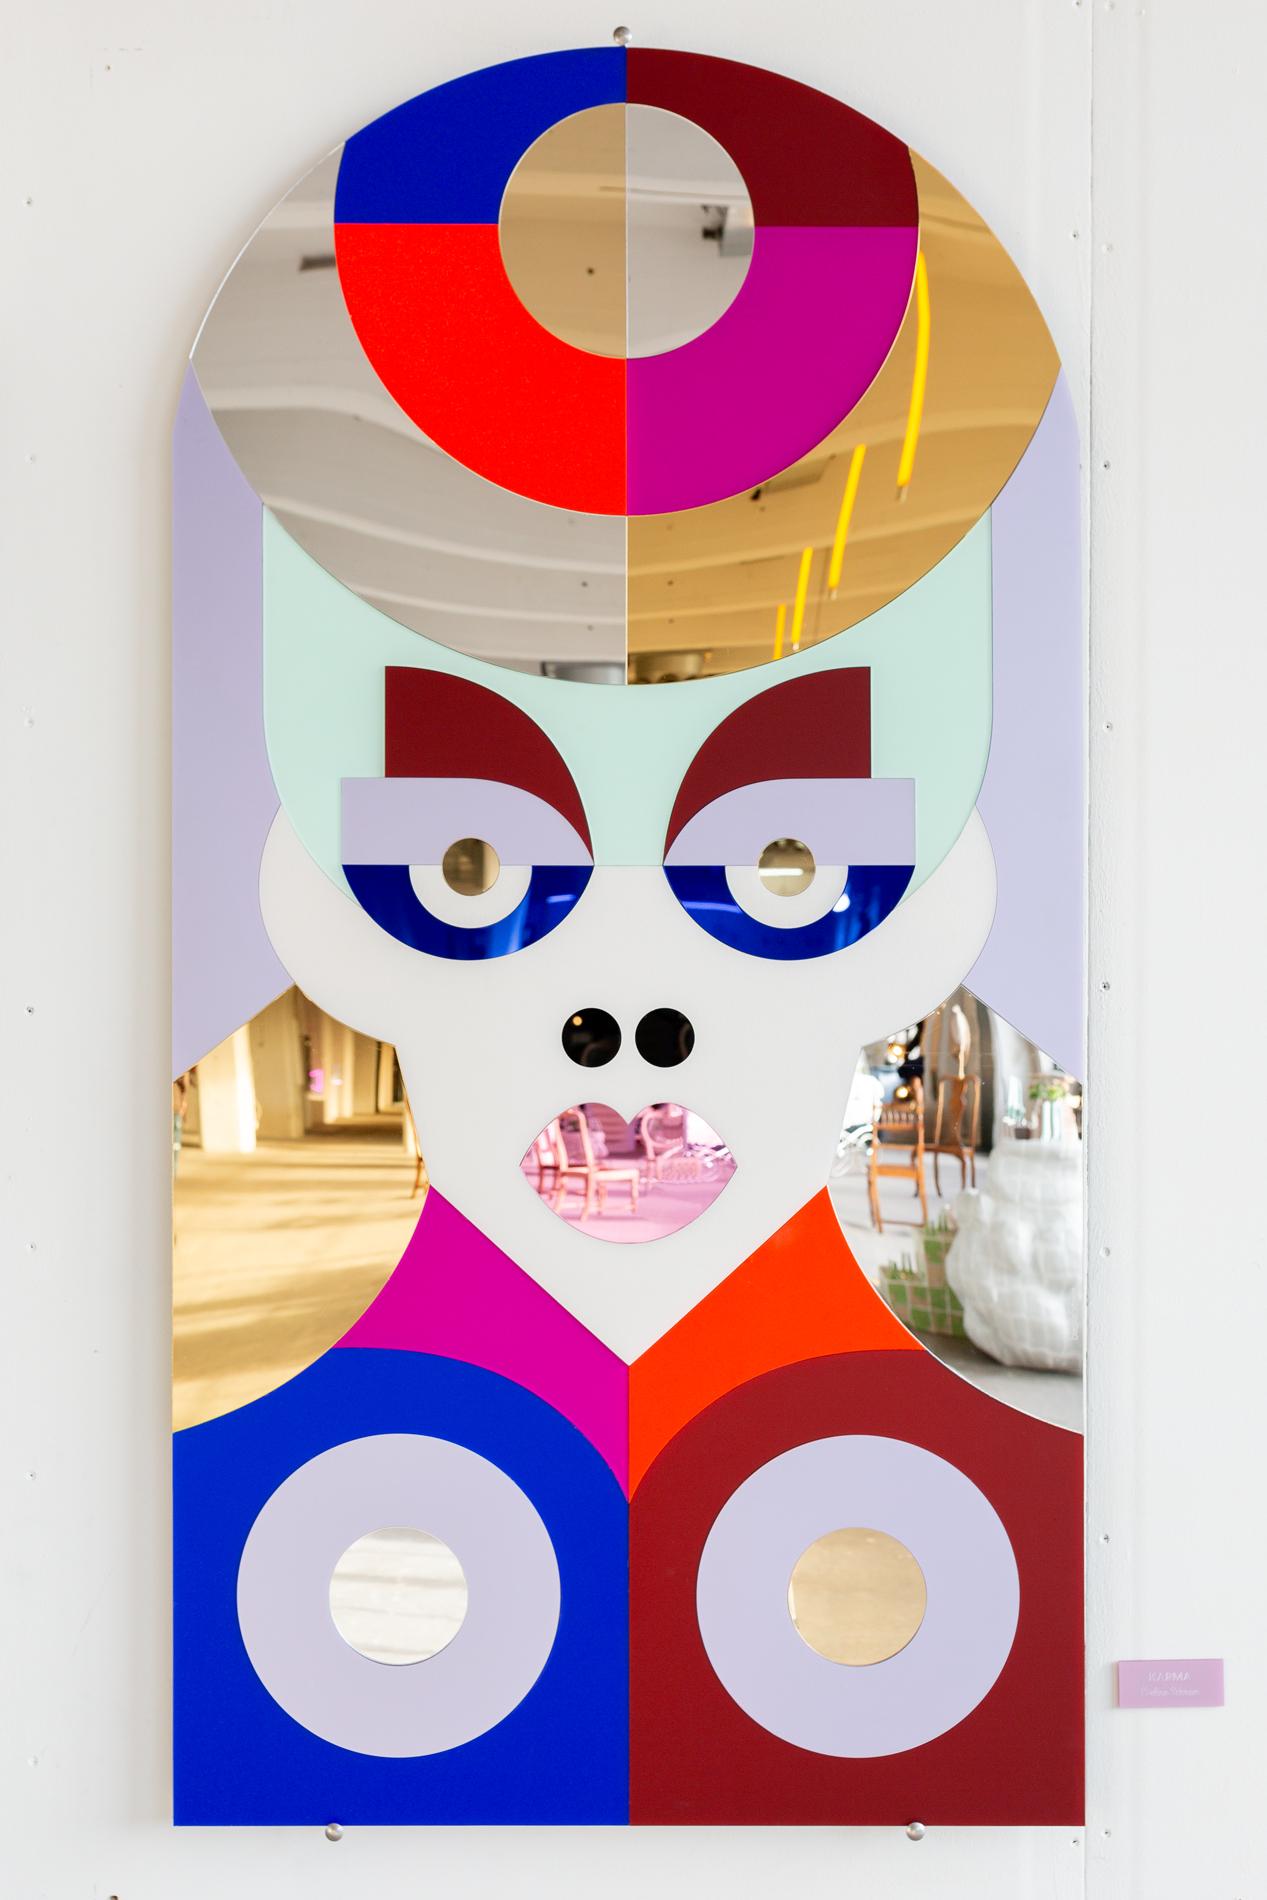 Karma est un miroir coloré de 150 cm de haut, conçu et créé par Eveline Schram. L'œuvre est entièrement constituée d'une gamme variée de matériaux en plexiglas, y compris des surfaces réfléchissantes en miroir coloré, en givre, en métal et en